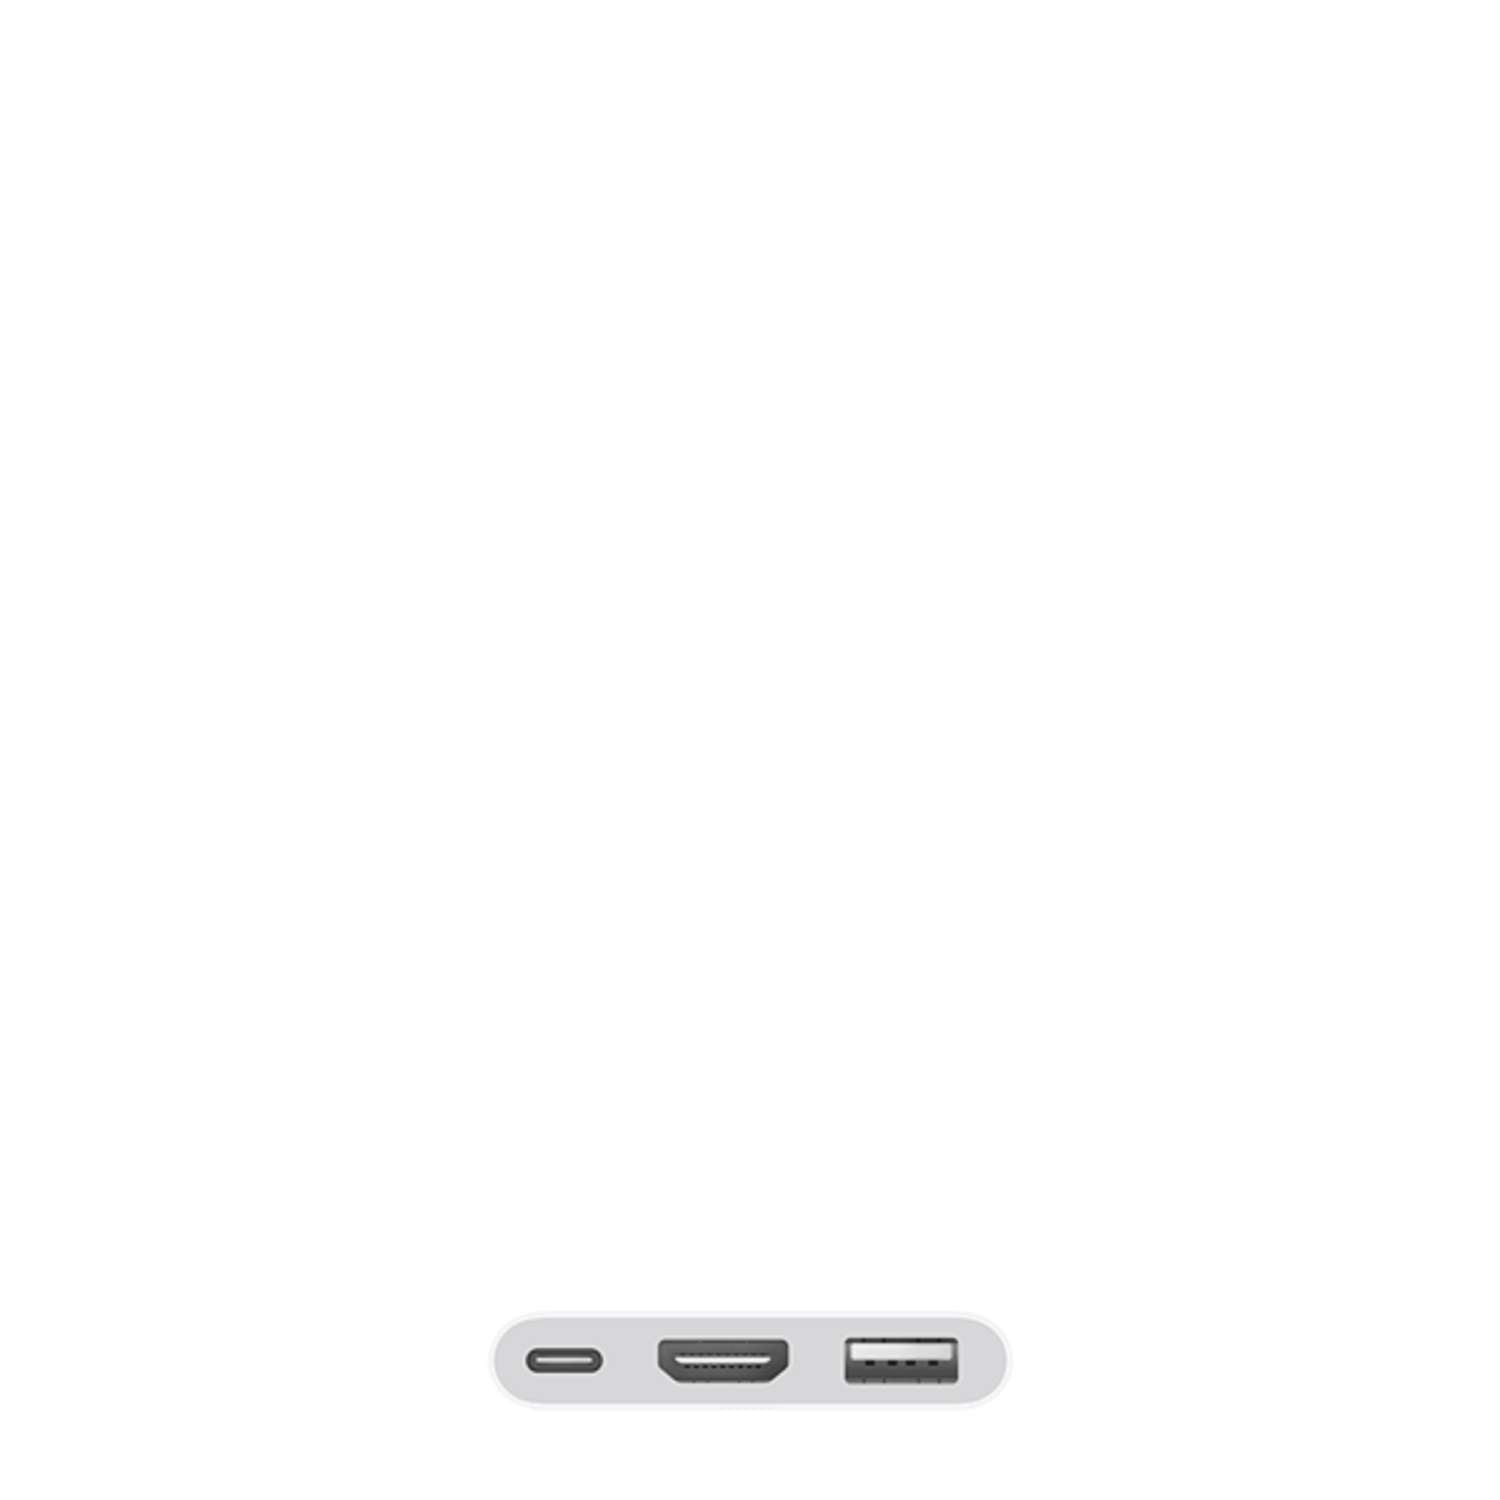  Adaptador Apple Lightning a HDMI AV digital